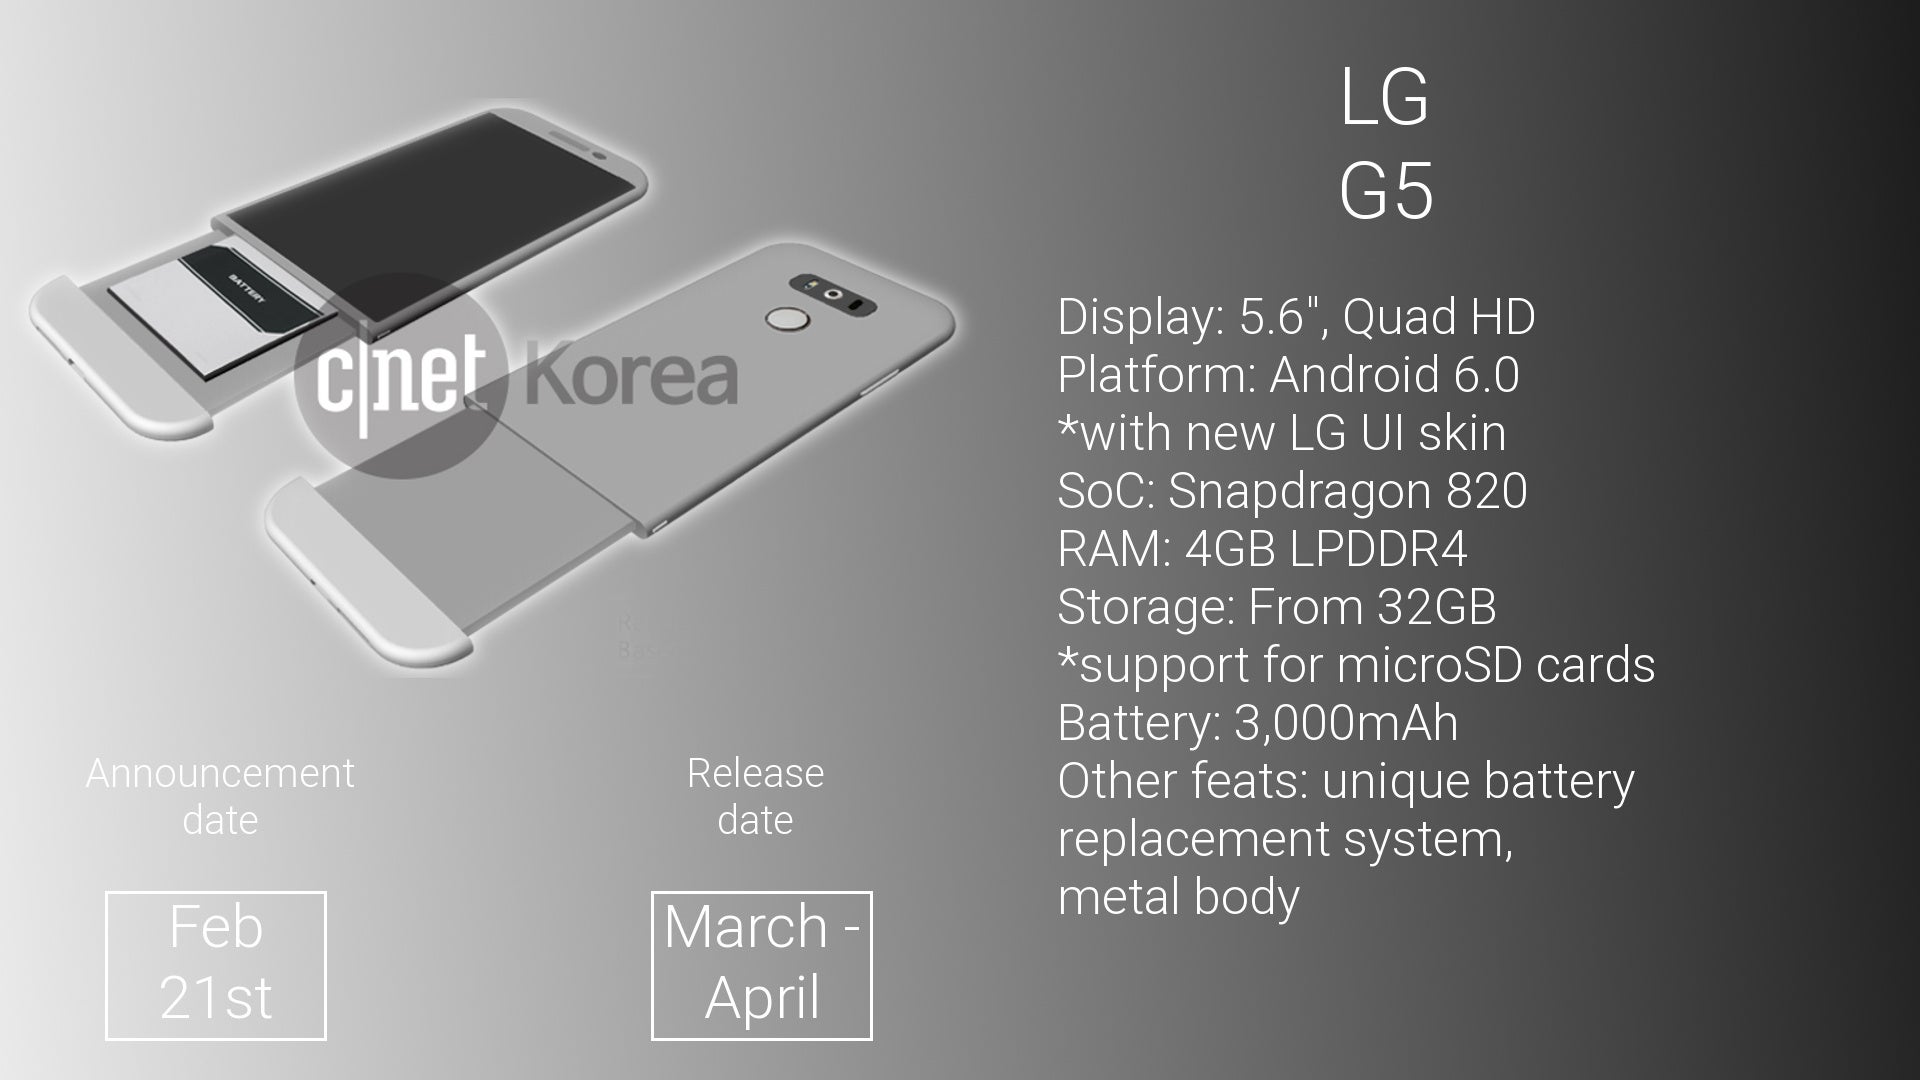 Samsung Galaxy S7 vs LG G5: preliminary specs comparison